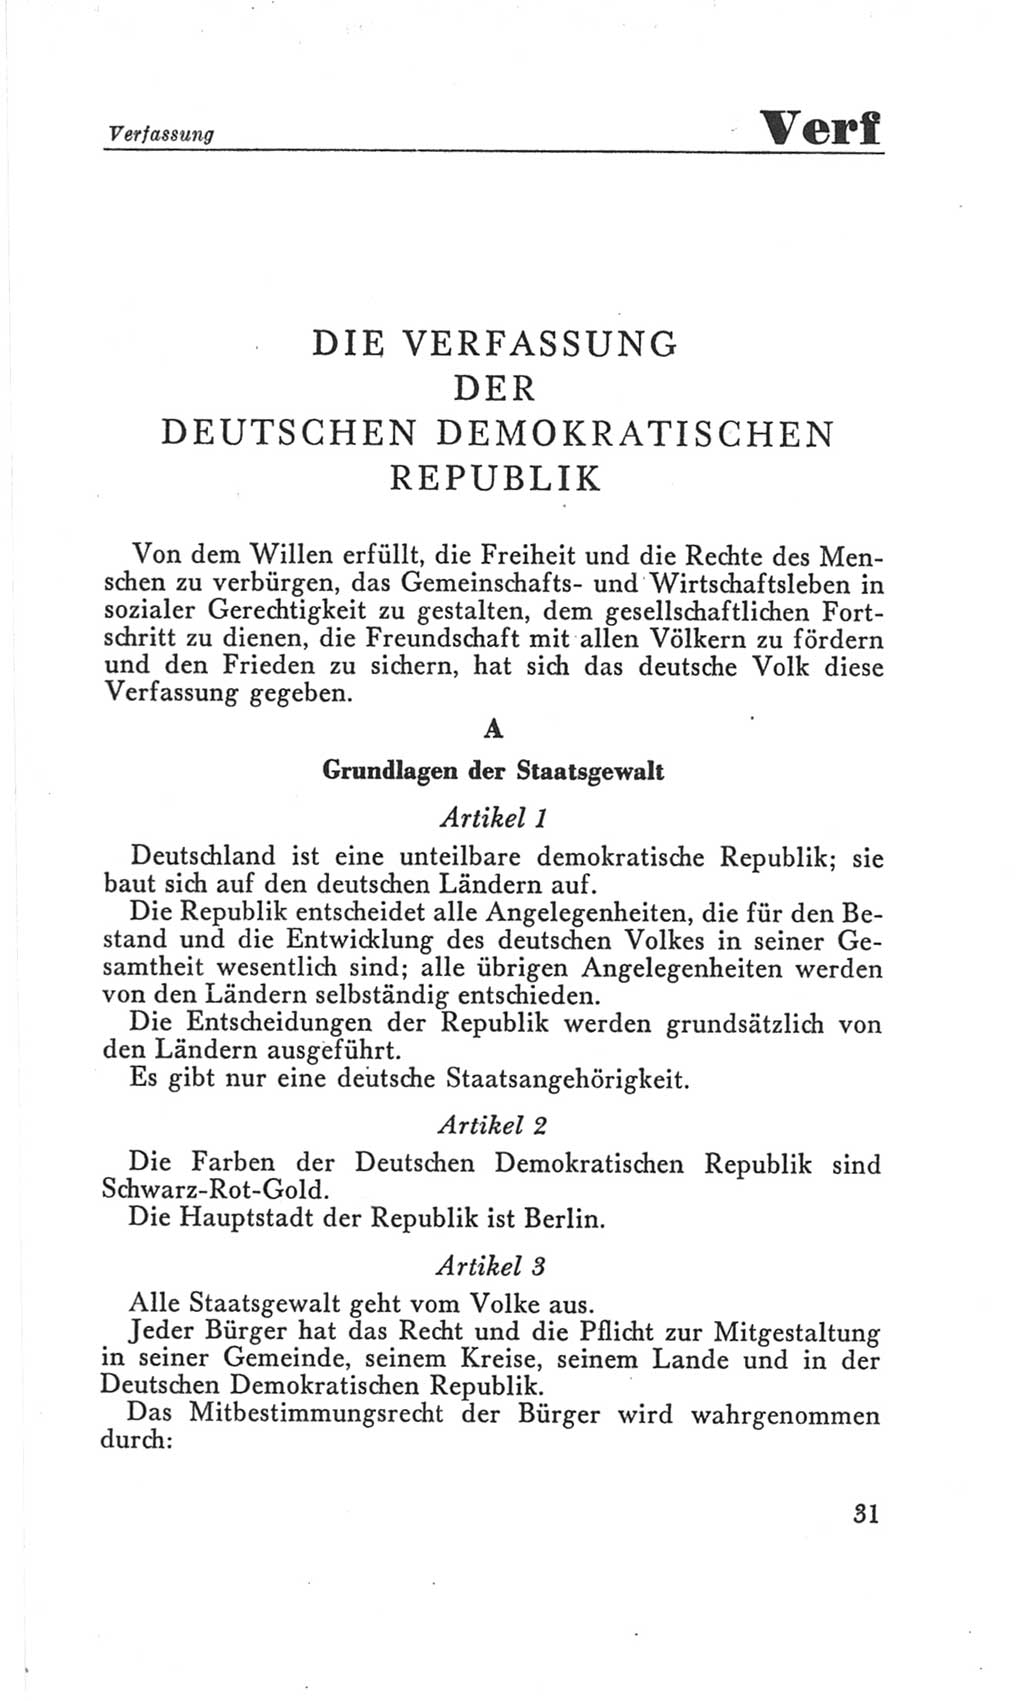 Handbuch der Volkskammer (VK) der Deutschen Demokratischen Republik (DDR), 3. Wahlperiode 1958-1963, Seite 31 (Hdb. VK. DDR 3. WP. 1958-1963, S. 31)